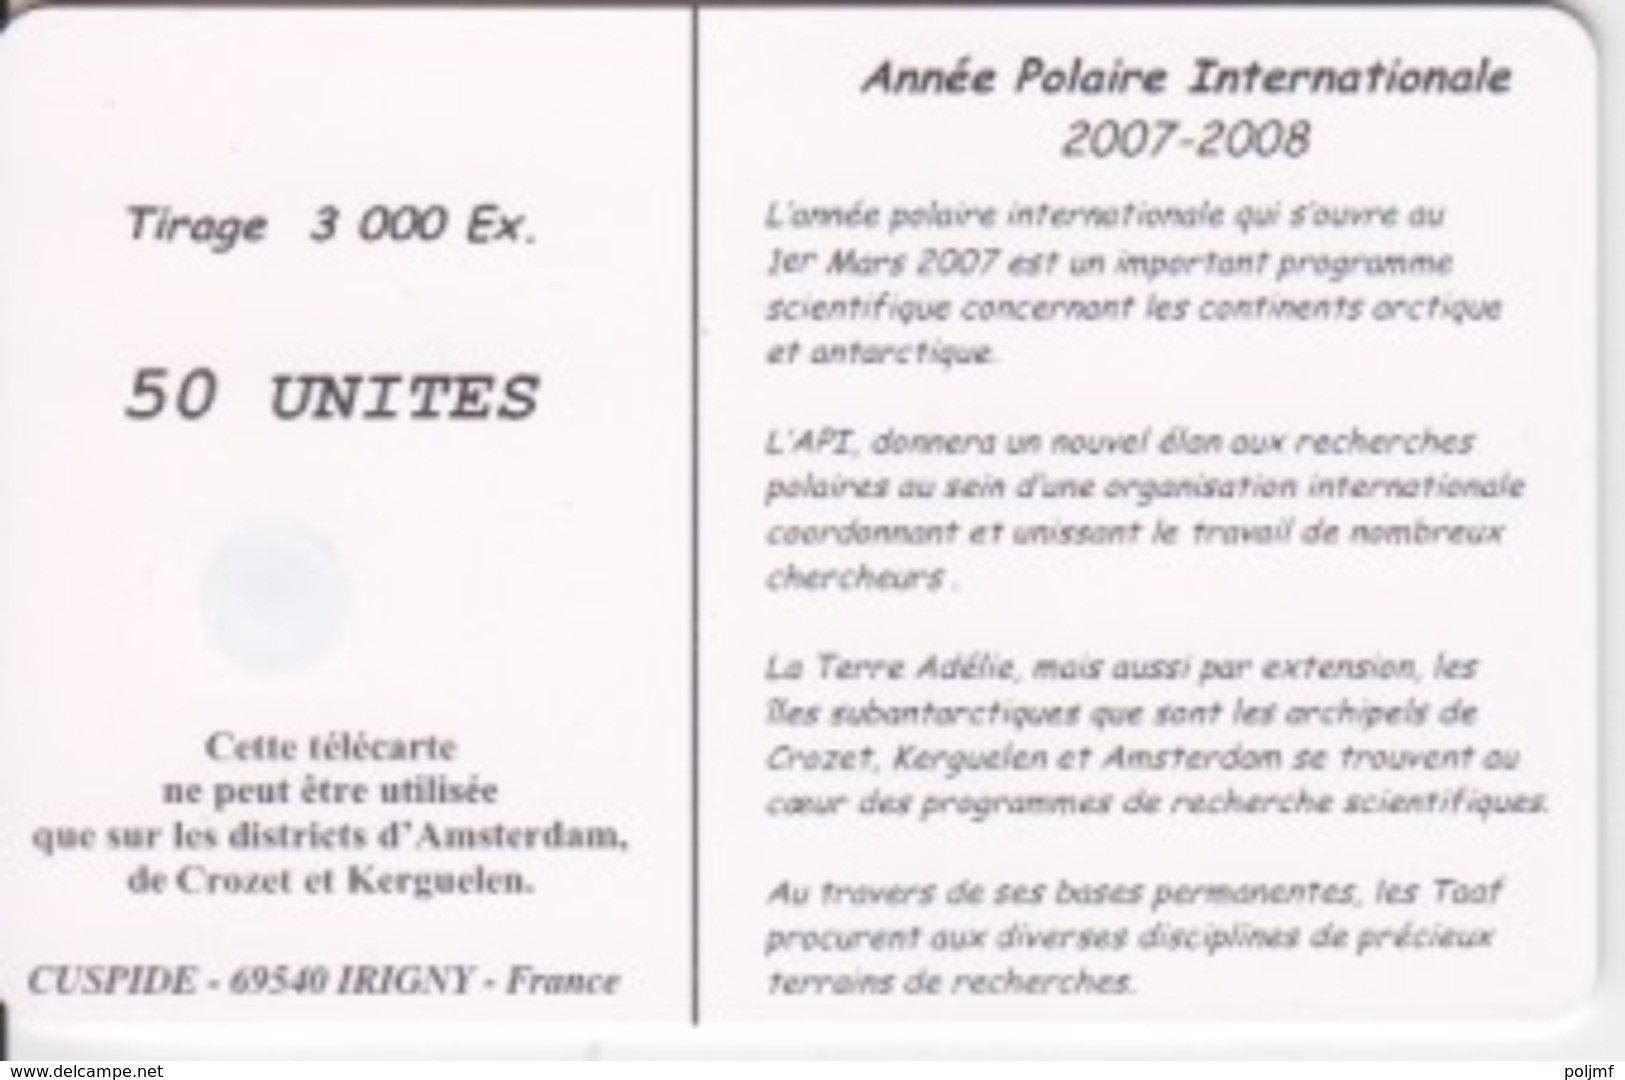 Télécarte 50U, Tirage 3000, Année Polaire Internationale 2007-2008 (Iceberg) - TAAF - Terres Australes Antarctiques Françaises